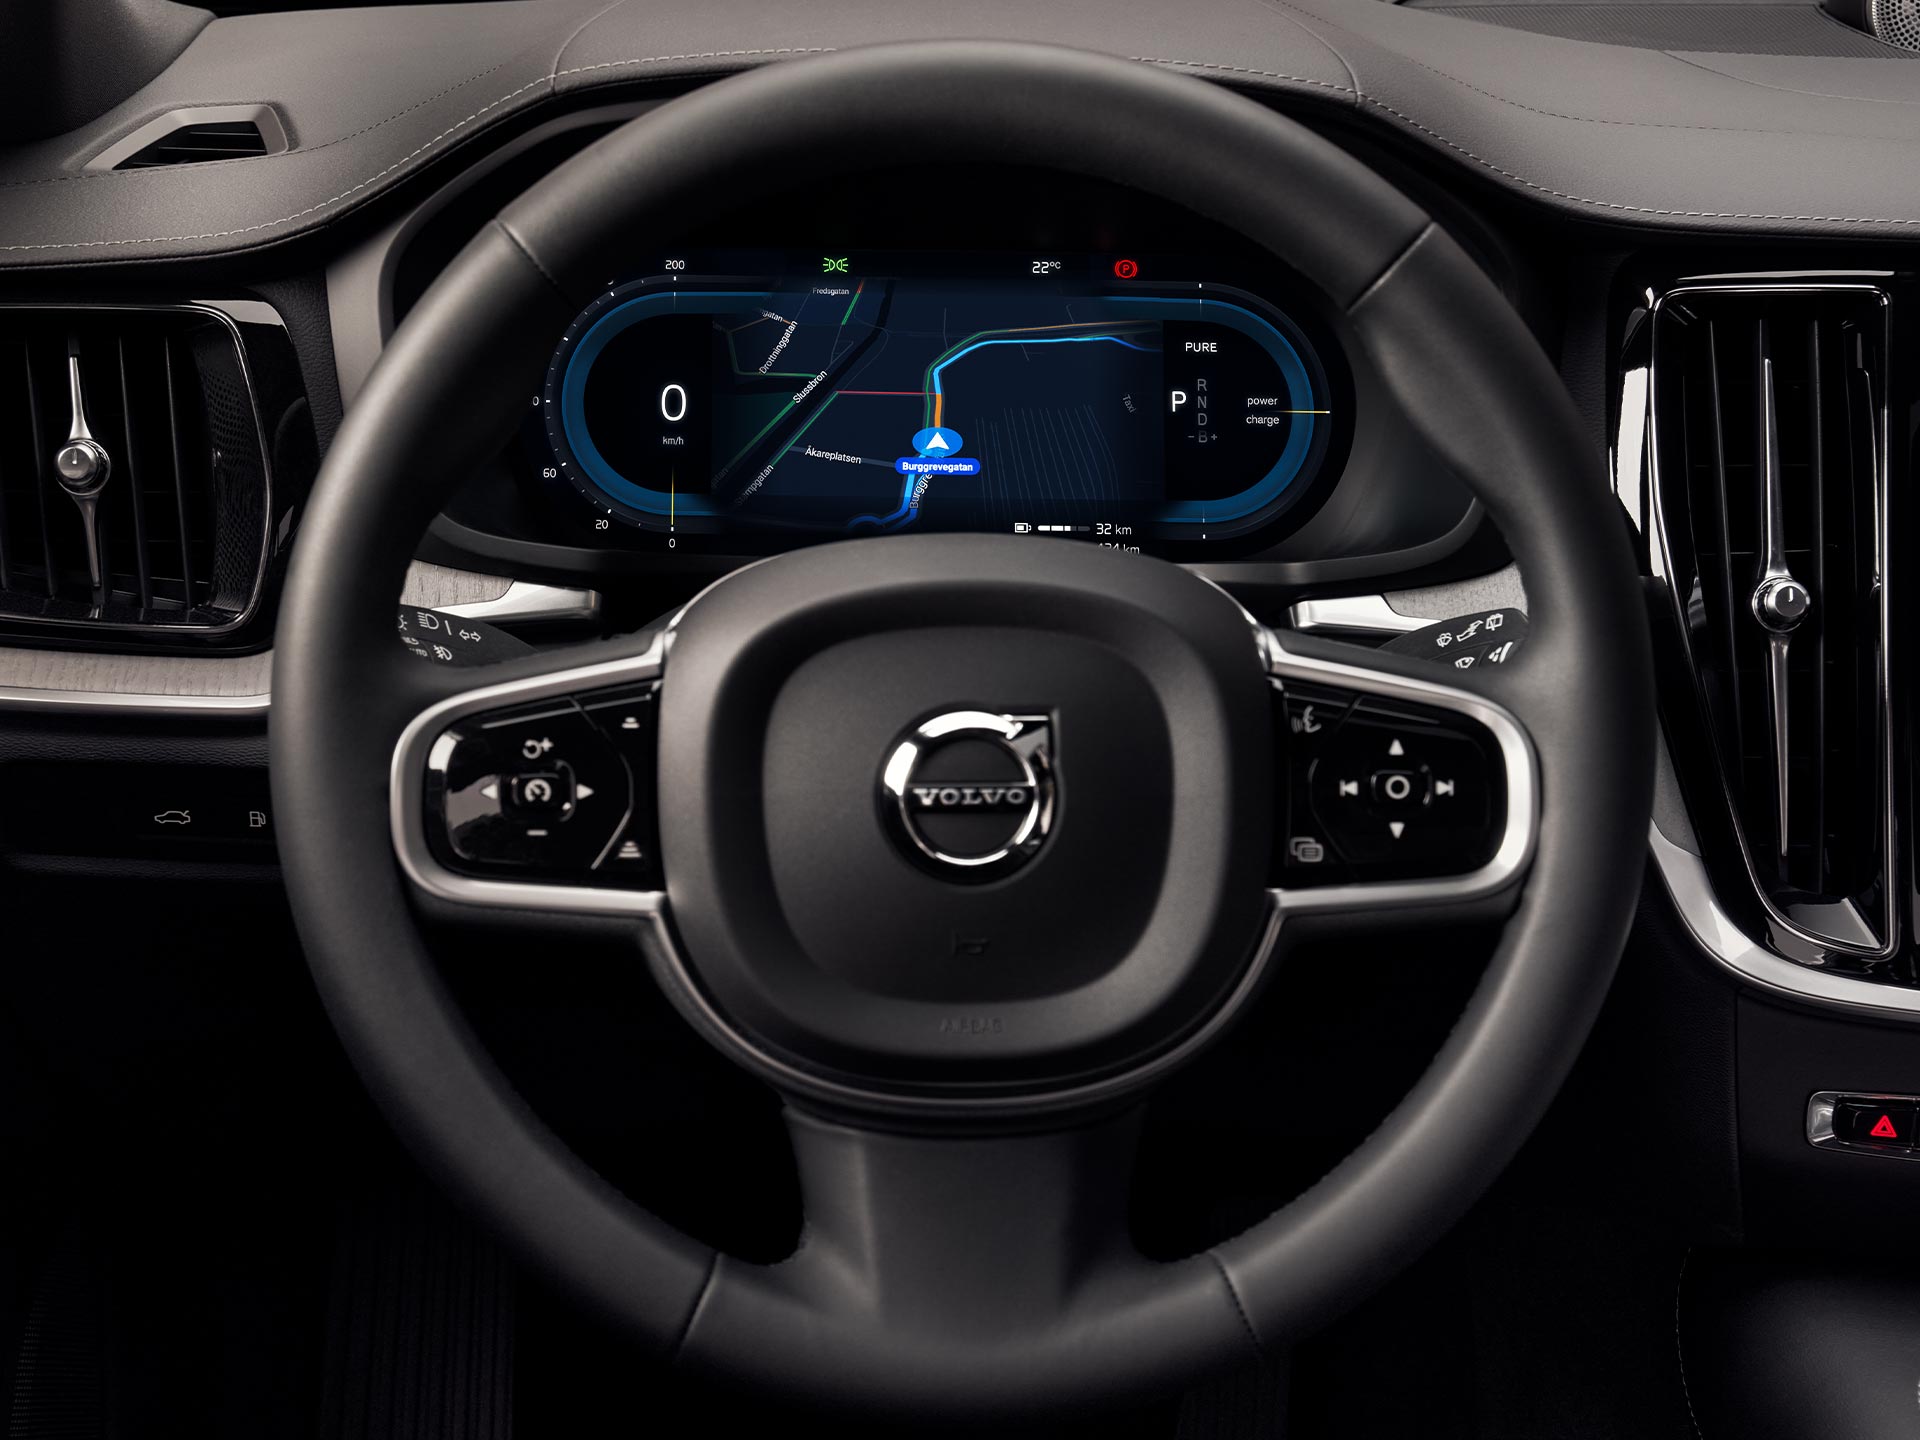 Displej komunikačního rozhraní řidiče ve voze Volvo S60.